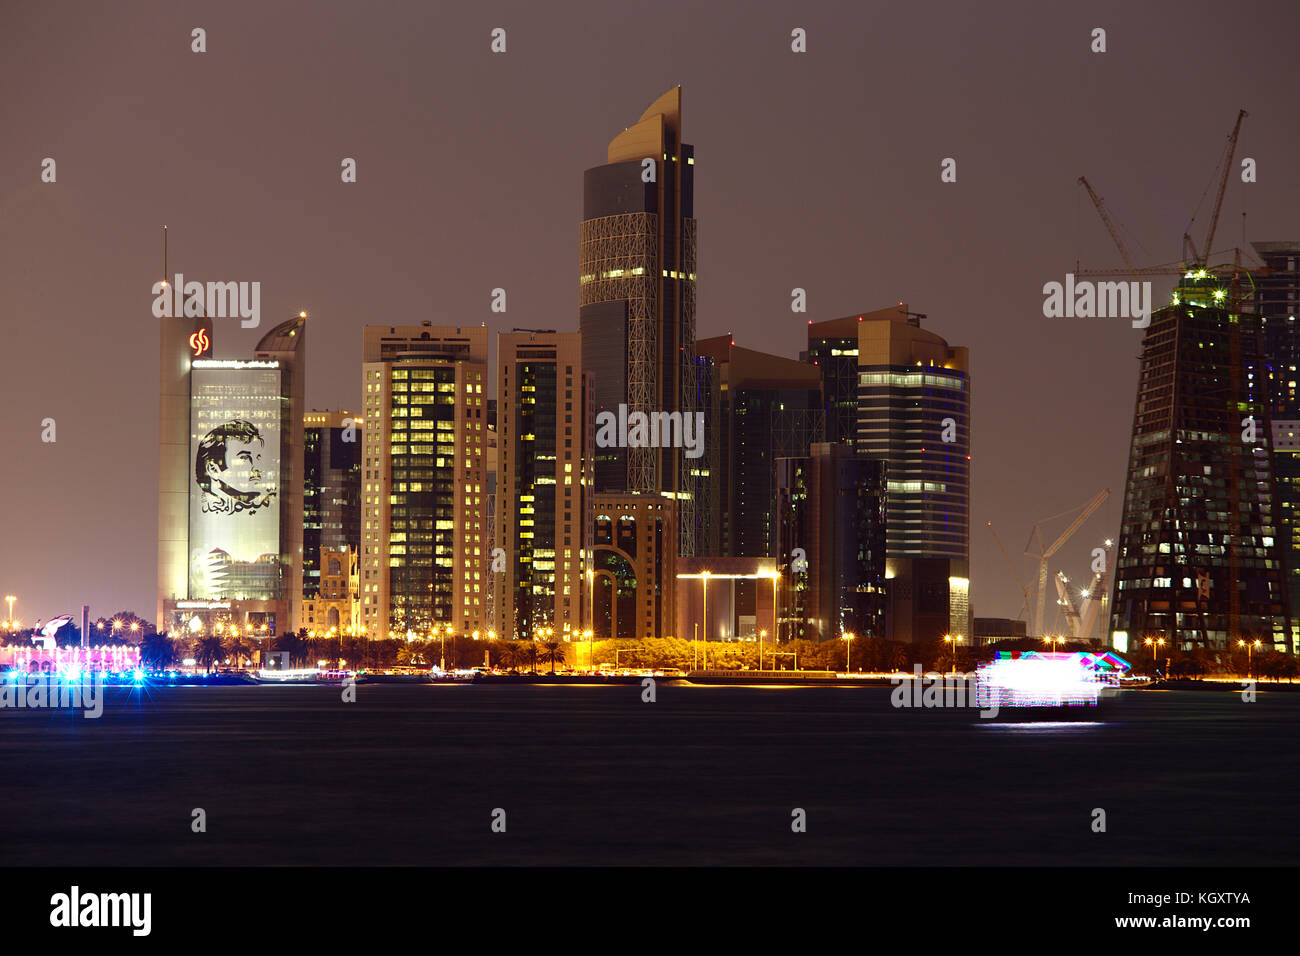 Doha, Qatar - 11 novembre 2017: skyline della città di notte con la banca commerciale dalla torre e poster di Emir Tamim Bin Hamad sulla sinistra. una luminosa Foto Stock